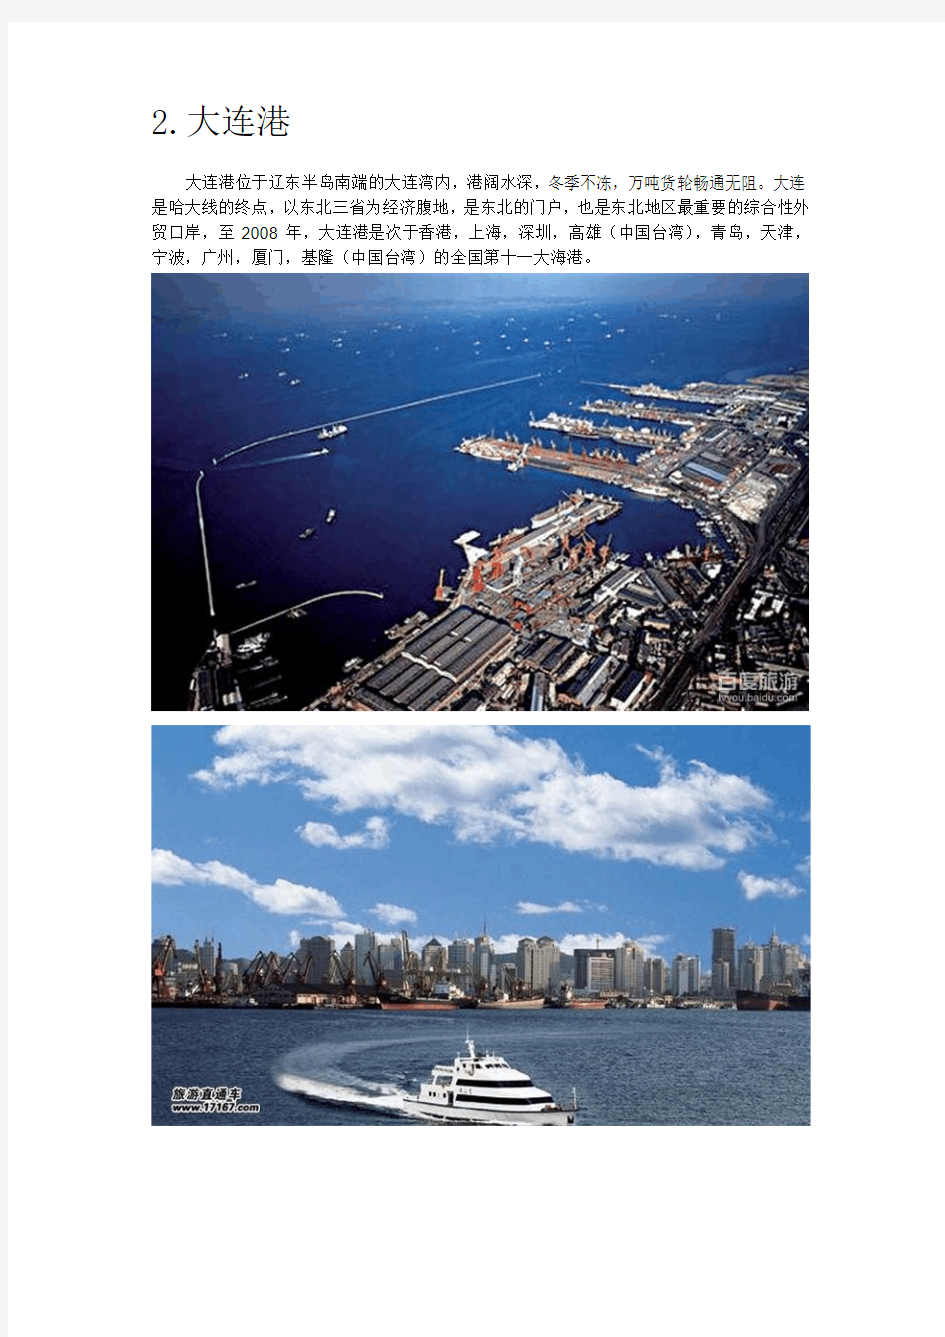 中国几个重要港口的基本信息